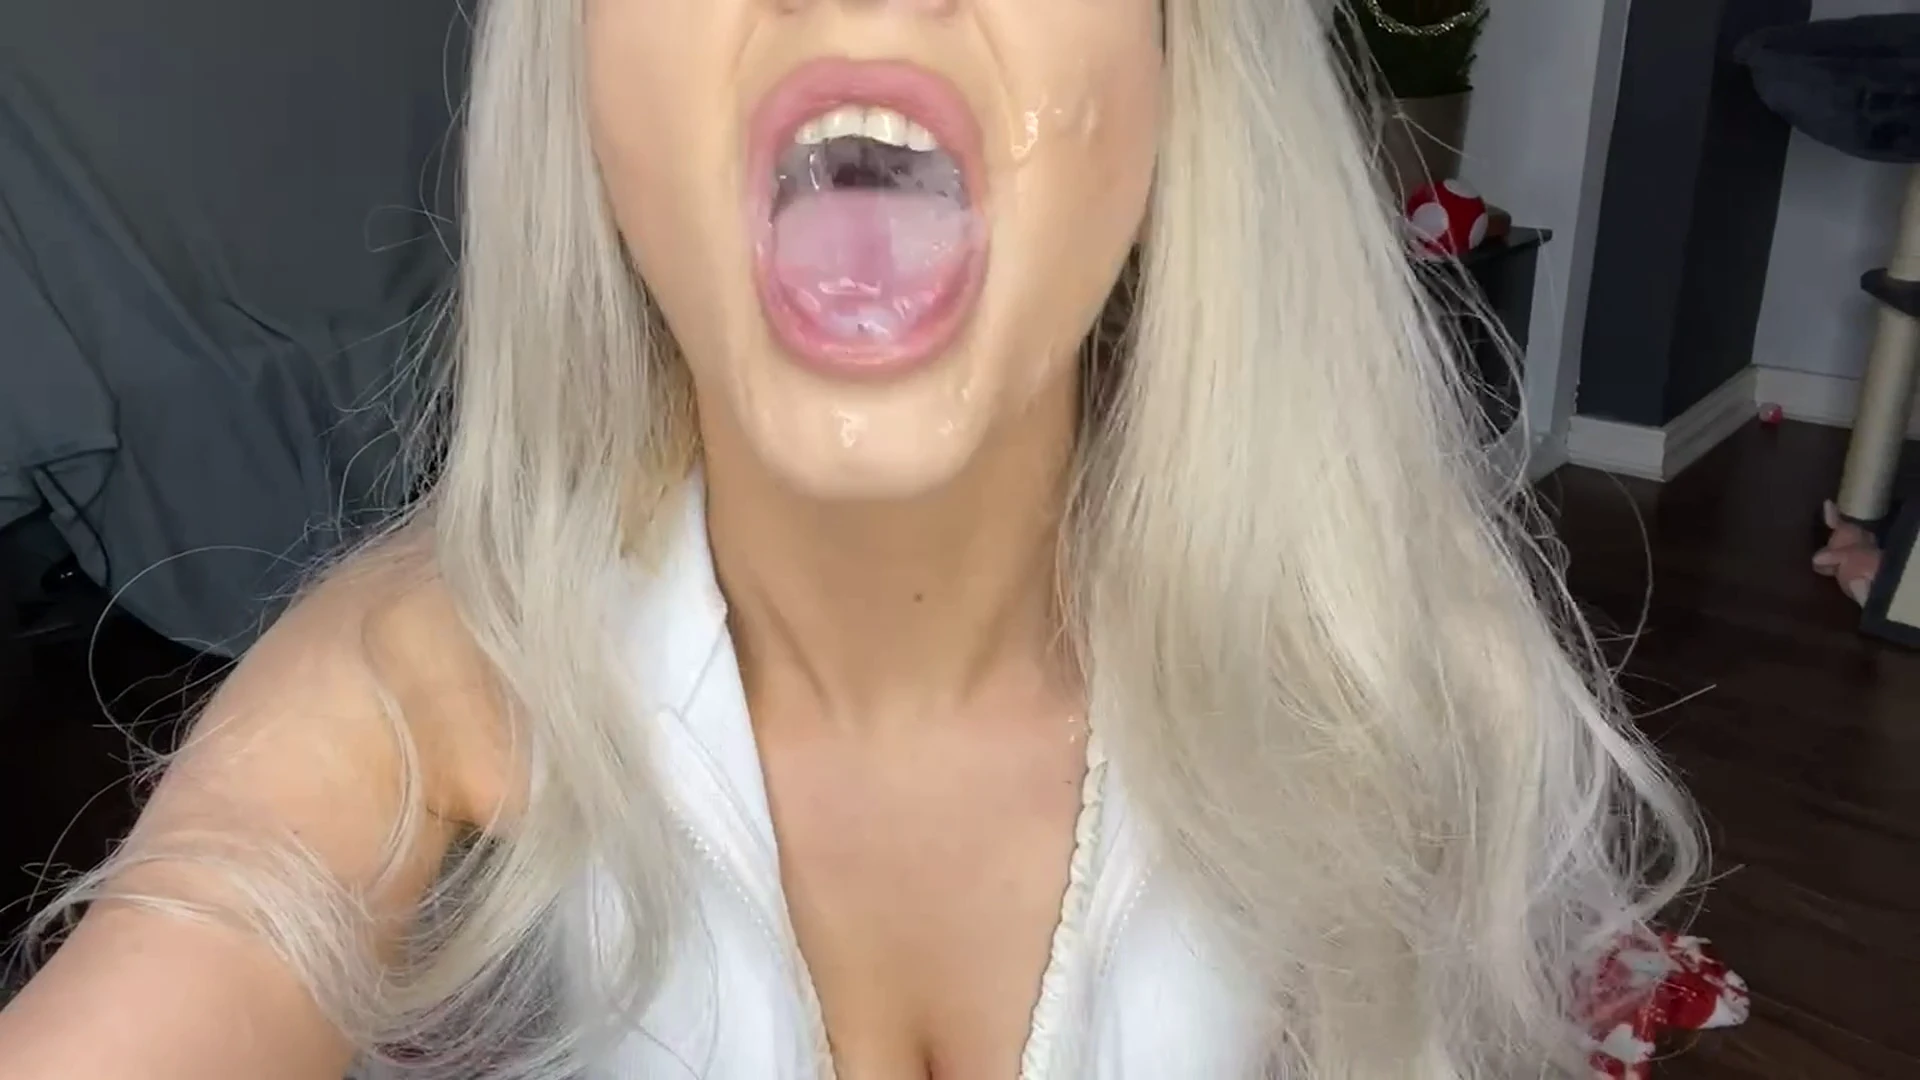 I love getting cum in my mouth